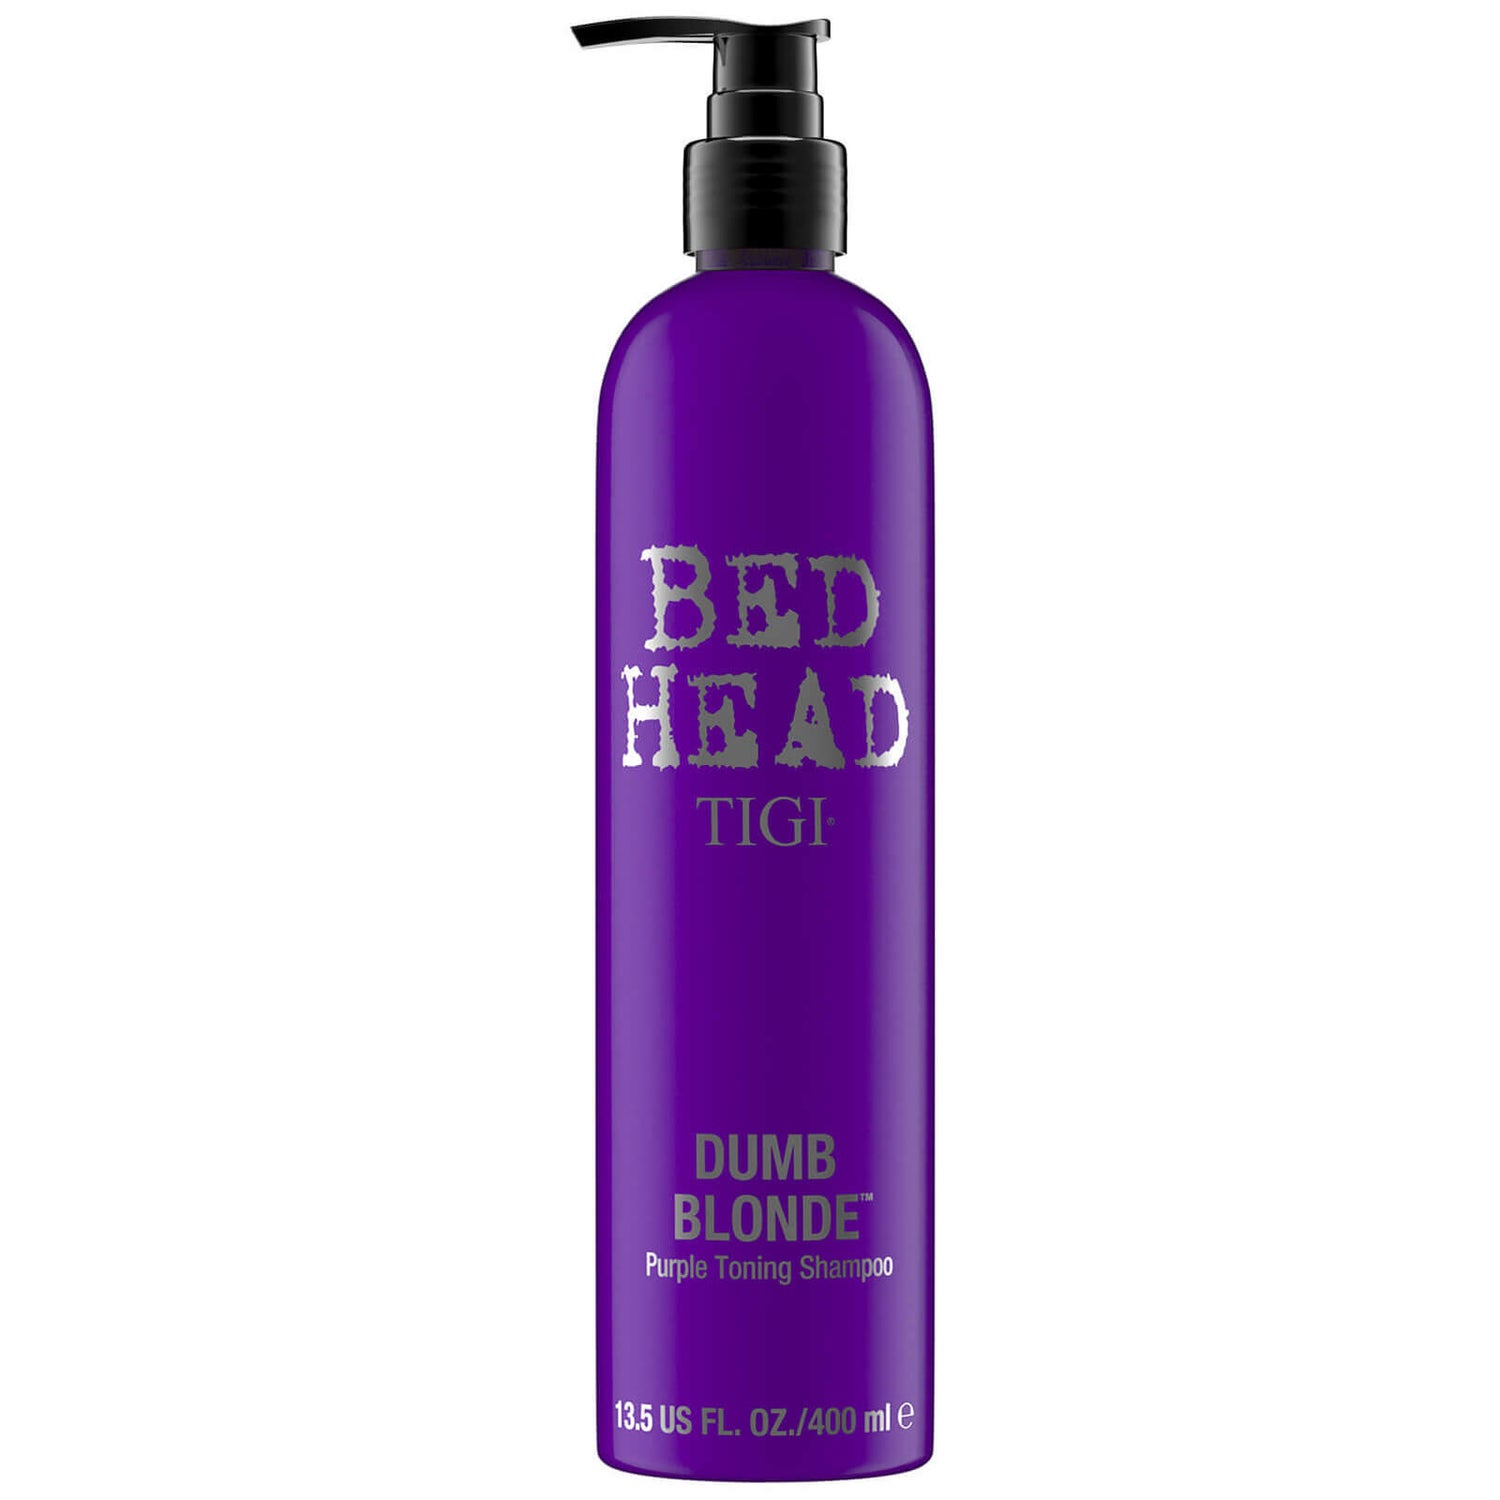 Champú con pigmentos violeta Blonde de TIGI Head (400 ml) | Envío Gratuito | Lookfantastic